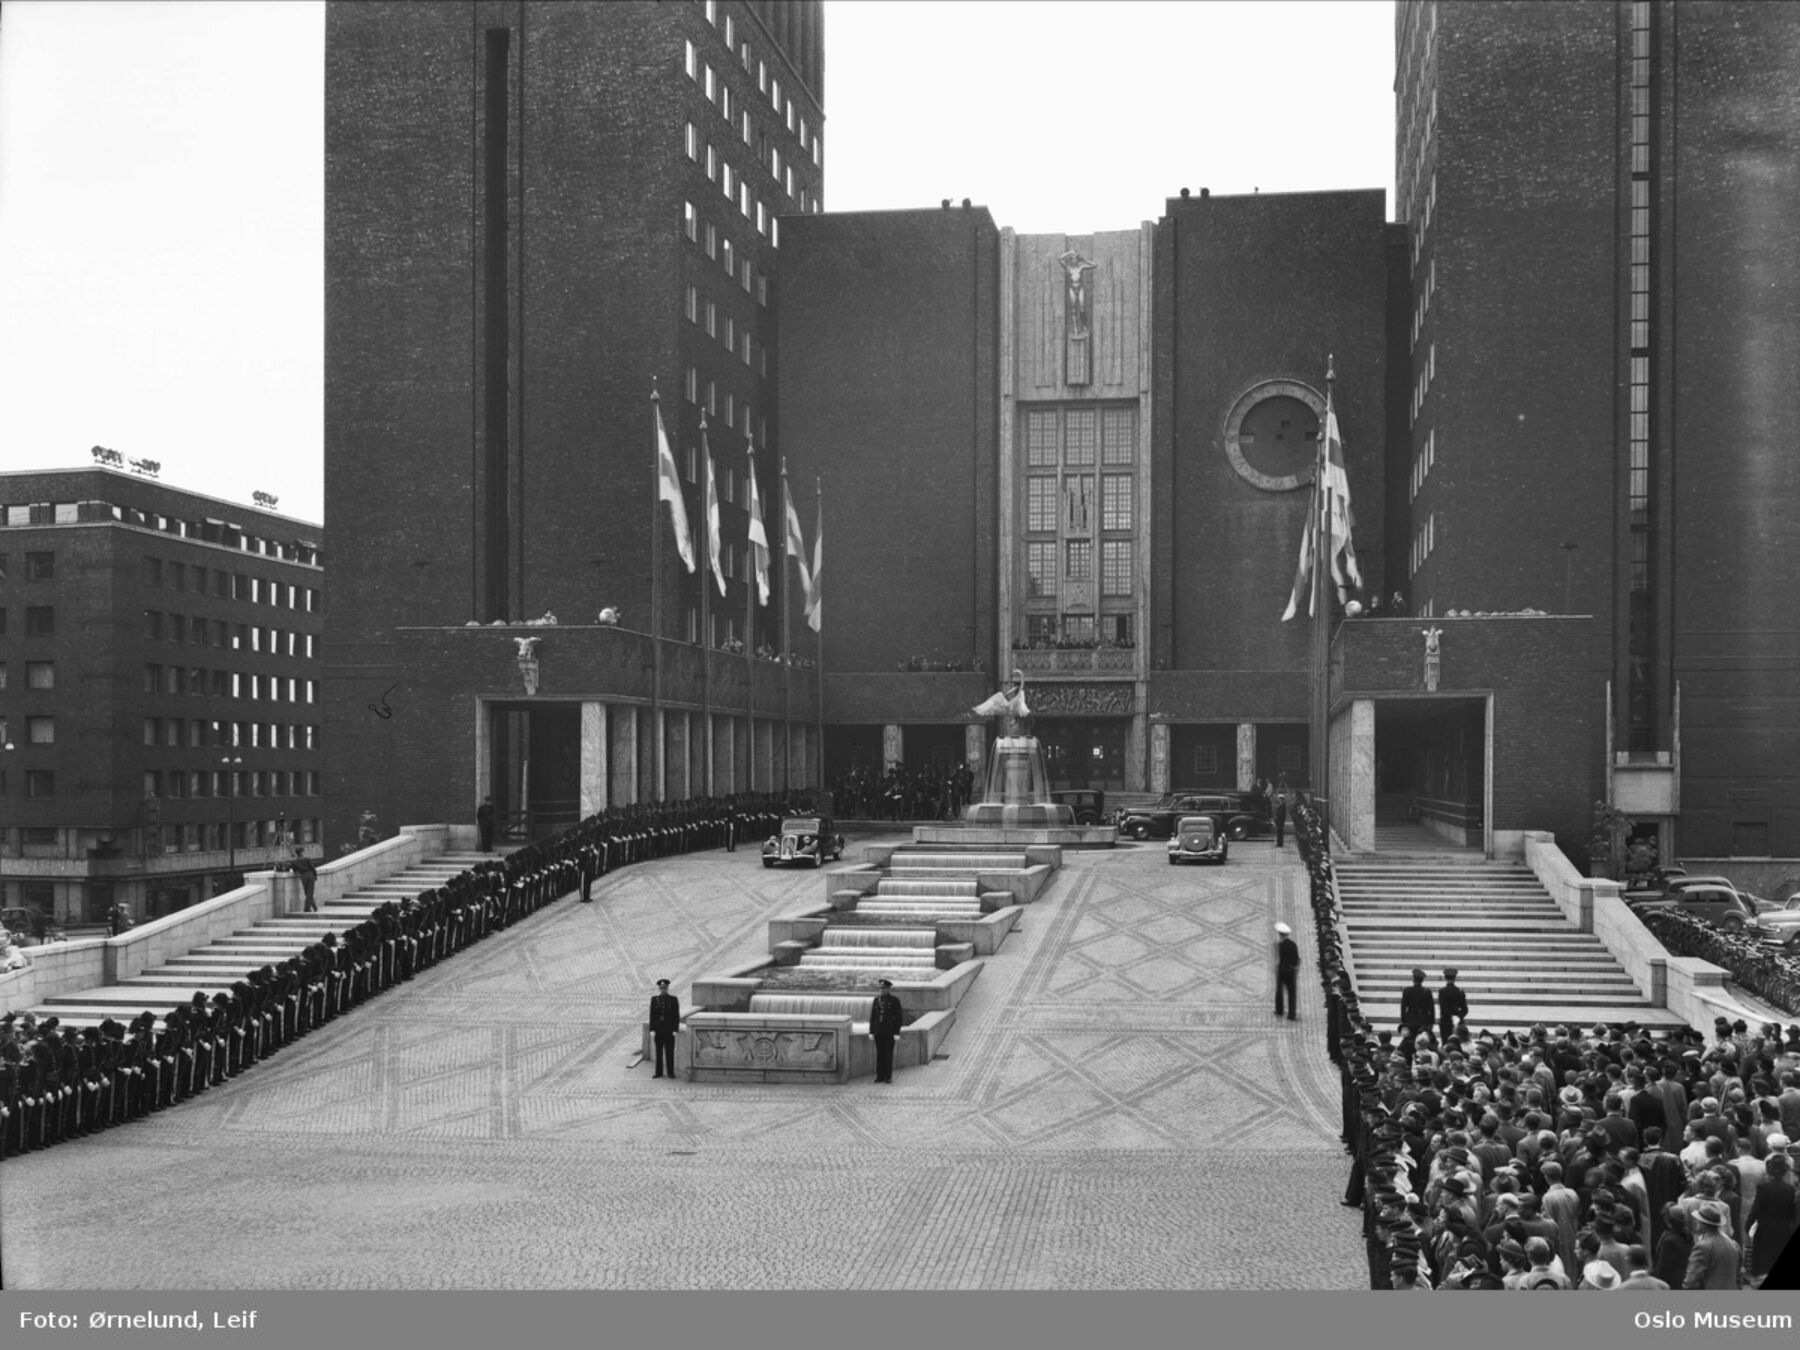 Svart-hvit foto av en stor murbygning med en åpen plass foran og mange mennesker som ser på. Bildet er tatt fra åpningen av Oslo rådhus i 1950. Foto.